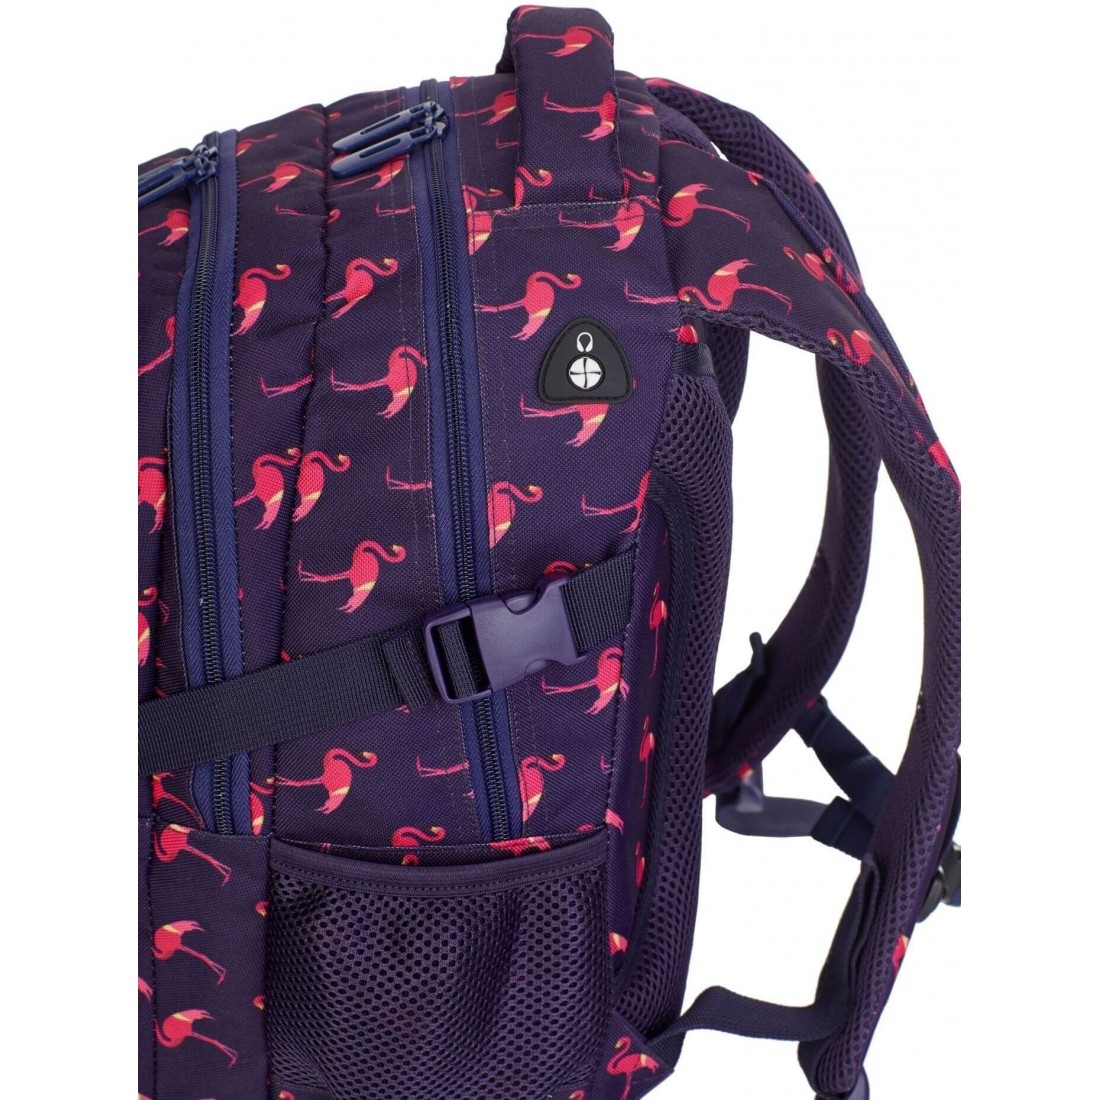 Plecak do 1 klasy dla dziewczynki Hash w różowe flamingi HS-87 - plecak-tornister.pl